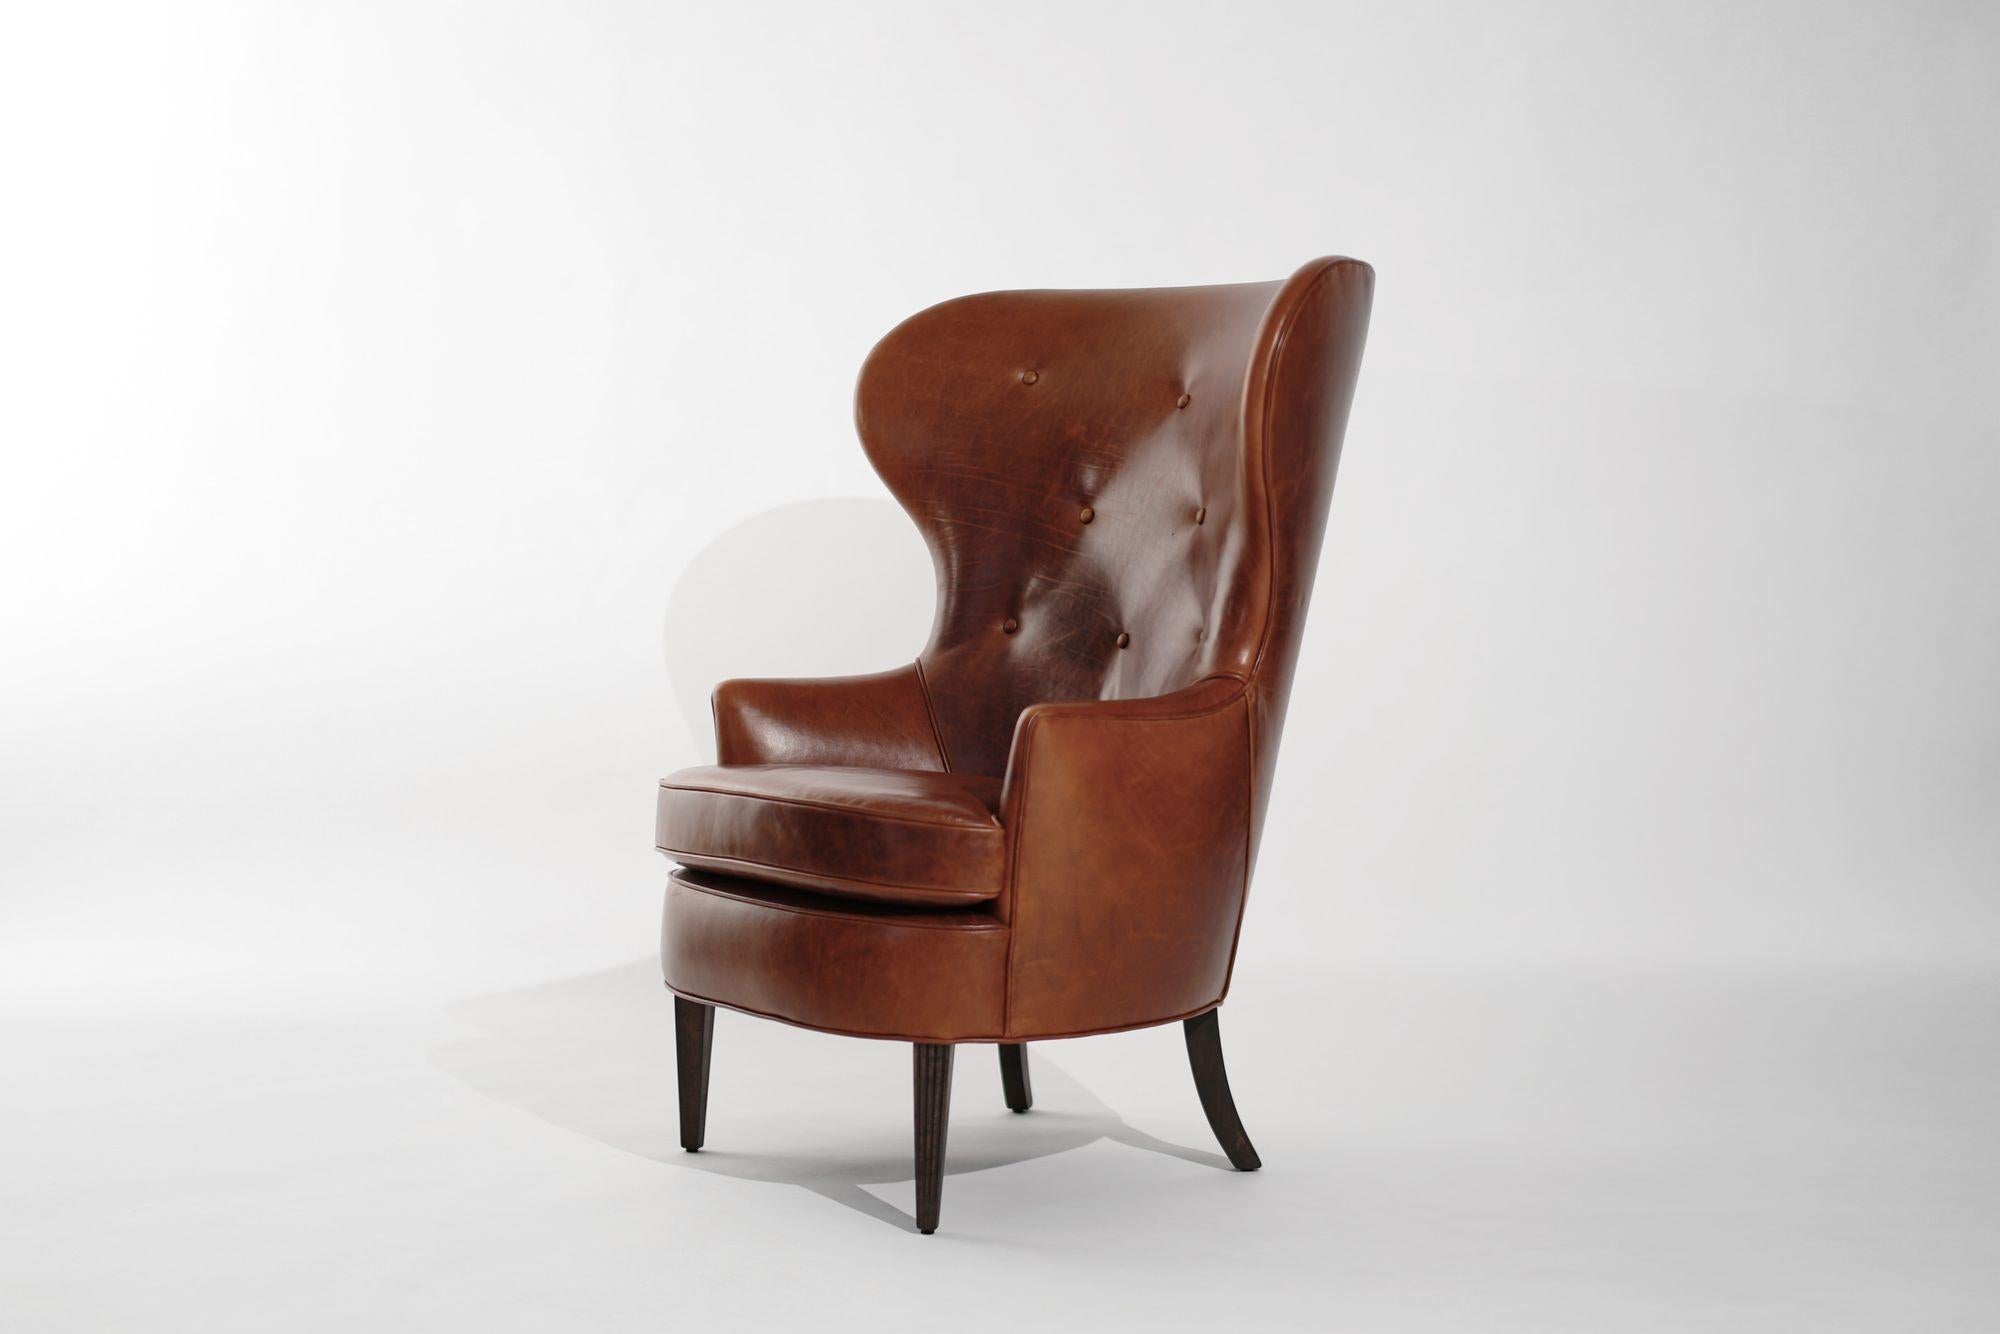 Entrez dans le luxe du milieu du siècle avec notre chaise Vintage Wingback Chair méticuleusement restaurée, qui rappelle le style emblématique d'Edward Wormley pour Dunbar dans les années 1950. Soigneusement ravivée et retapissée dans un somptueux